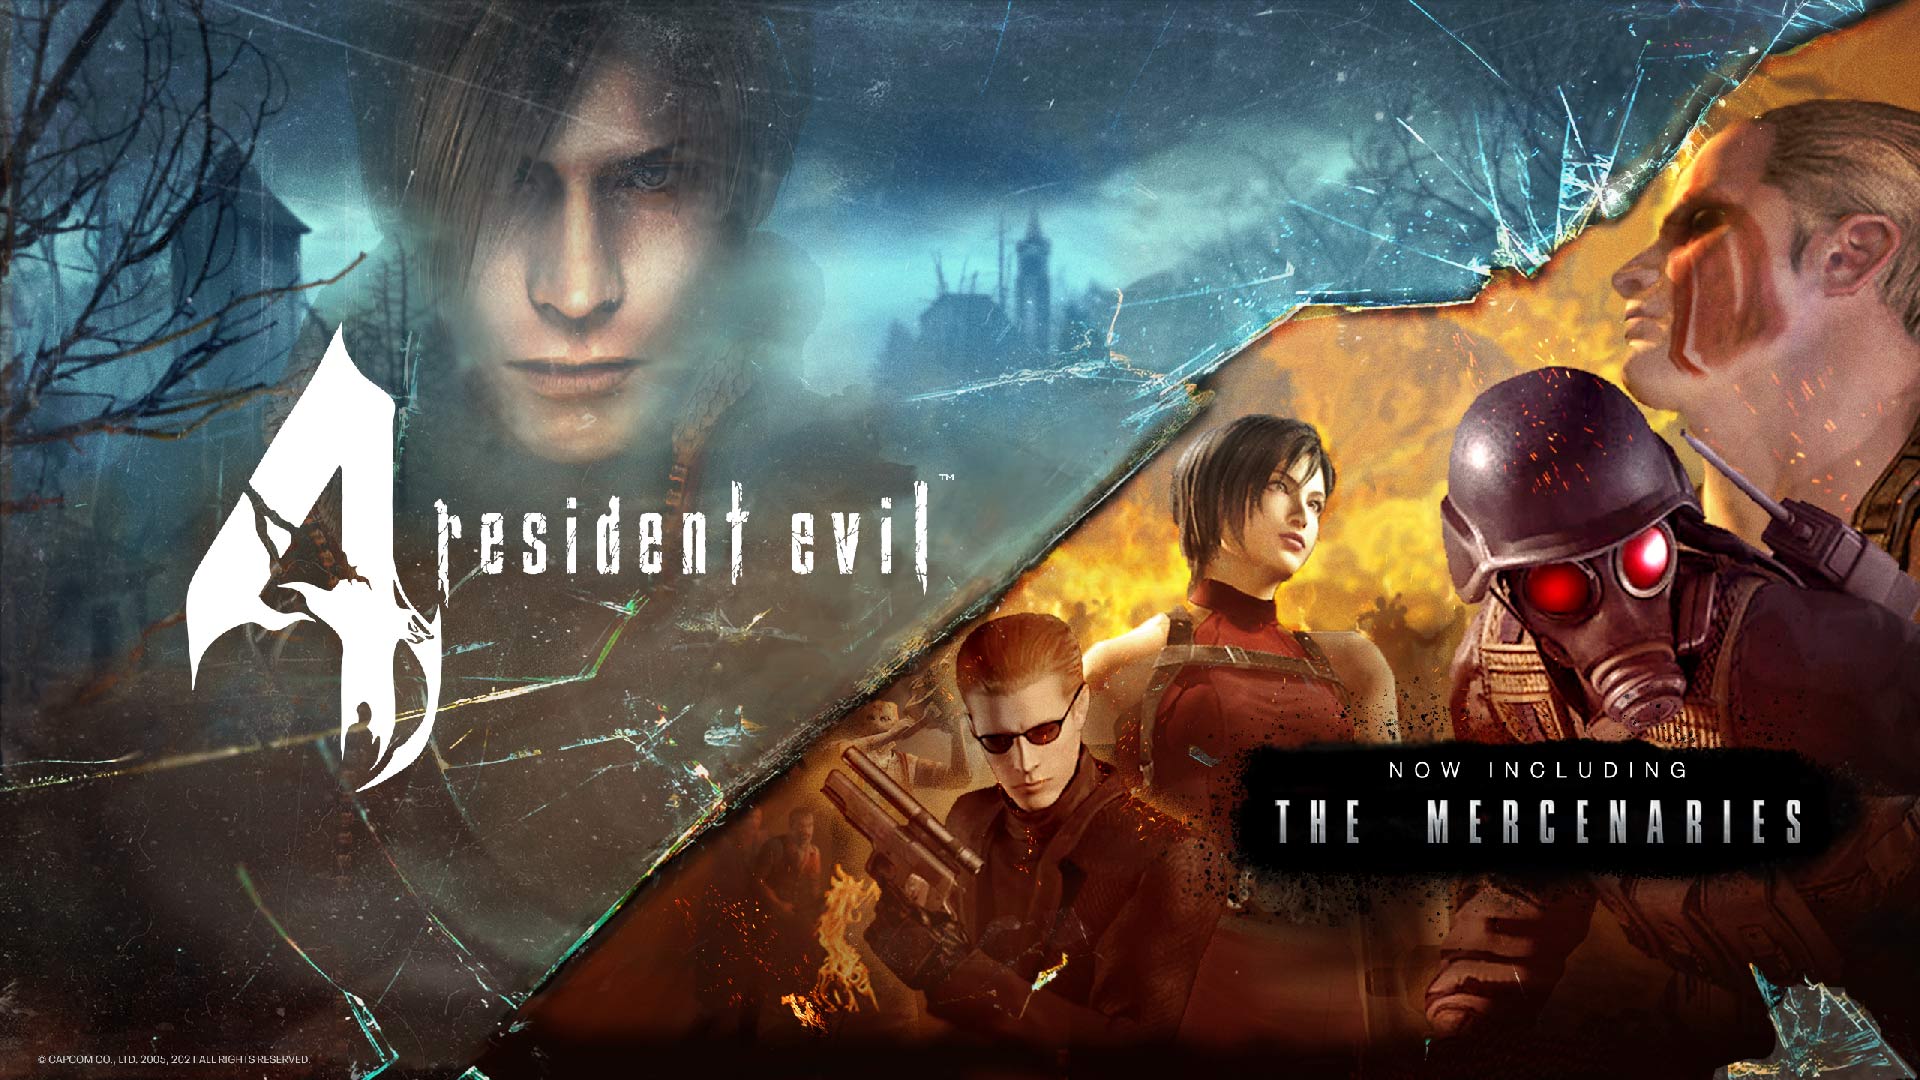 Resident Evil 4 Remake: modo VR será lançado no início de dezembro